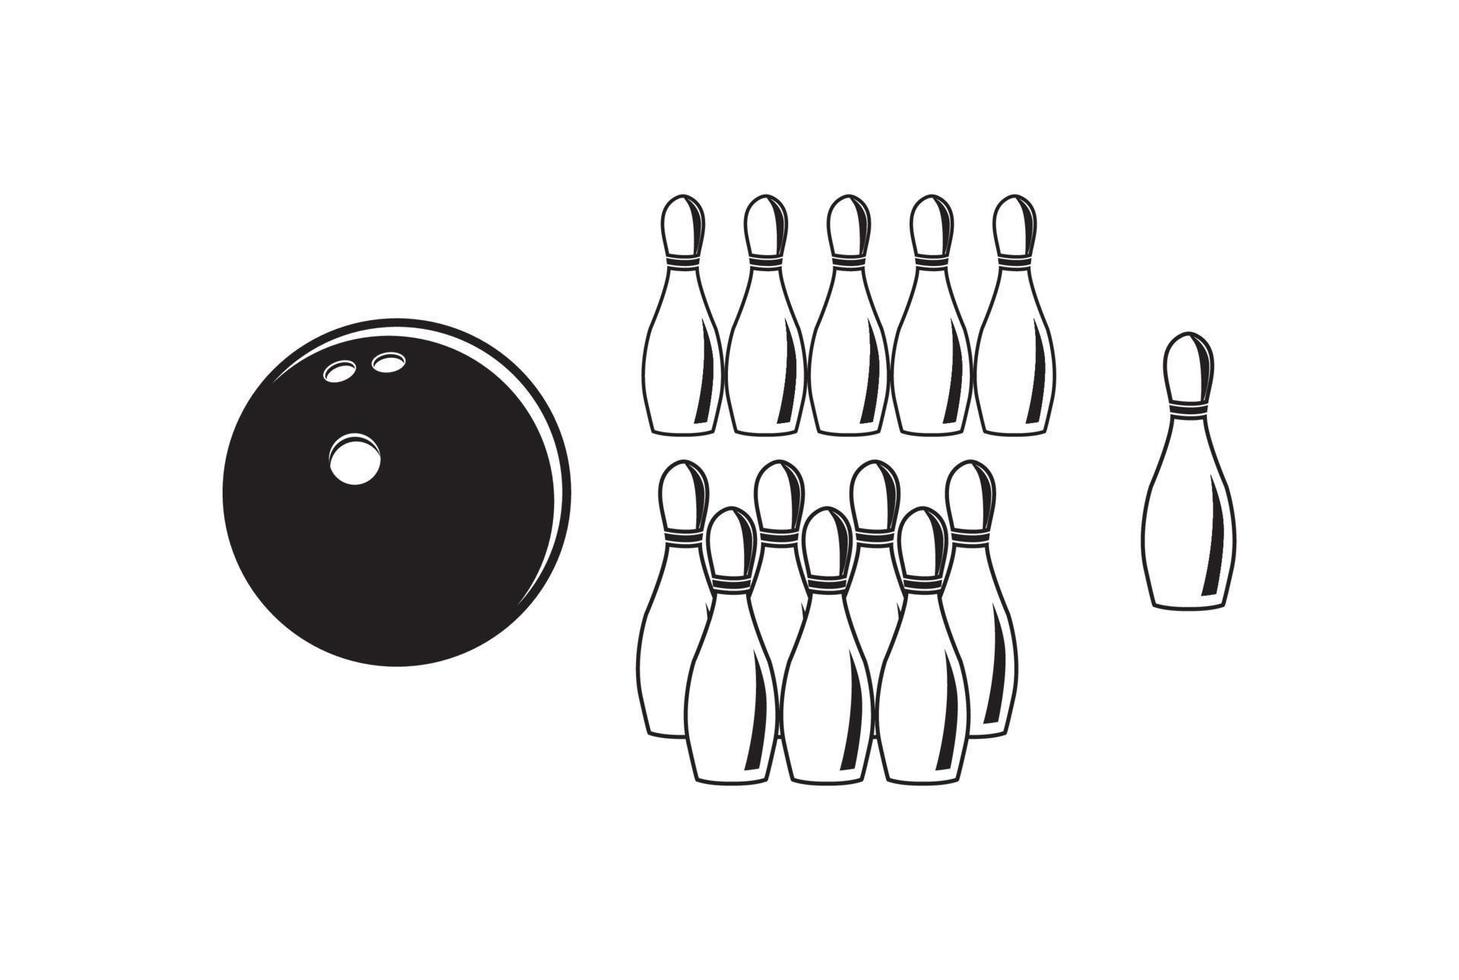 bola de boliche vintage com pino para clube esportivo ou vetor de ilustração de torneio de competição